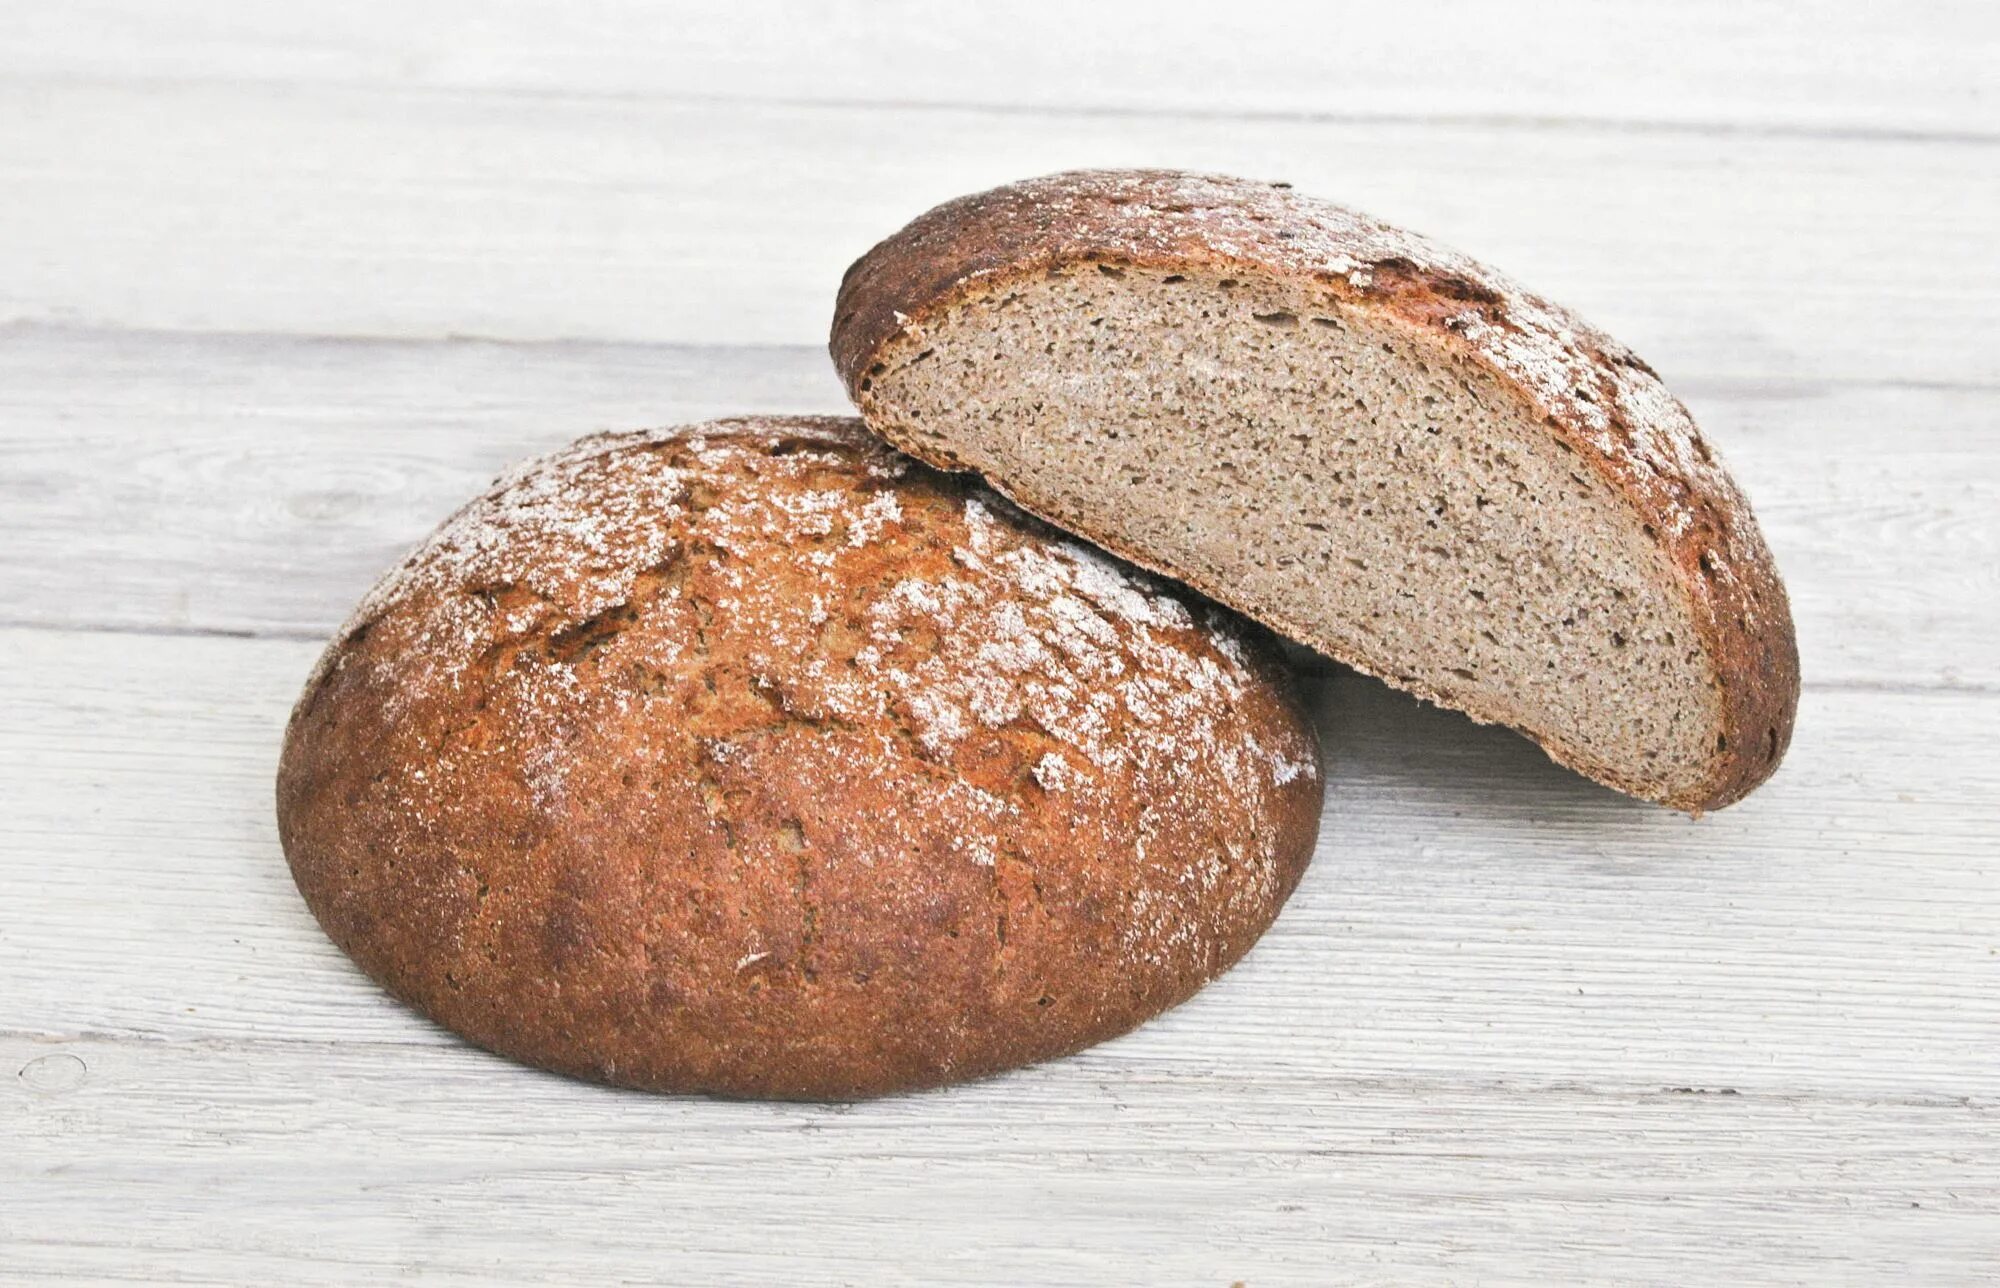 Ржаной хлеб смесь. Хлеб ржанопшеничный поддовый. Хлеб ржано-пшеничный подовый. Хлеб пшеничный деревенский подовый. Хлеб пшеничный отрубной.